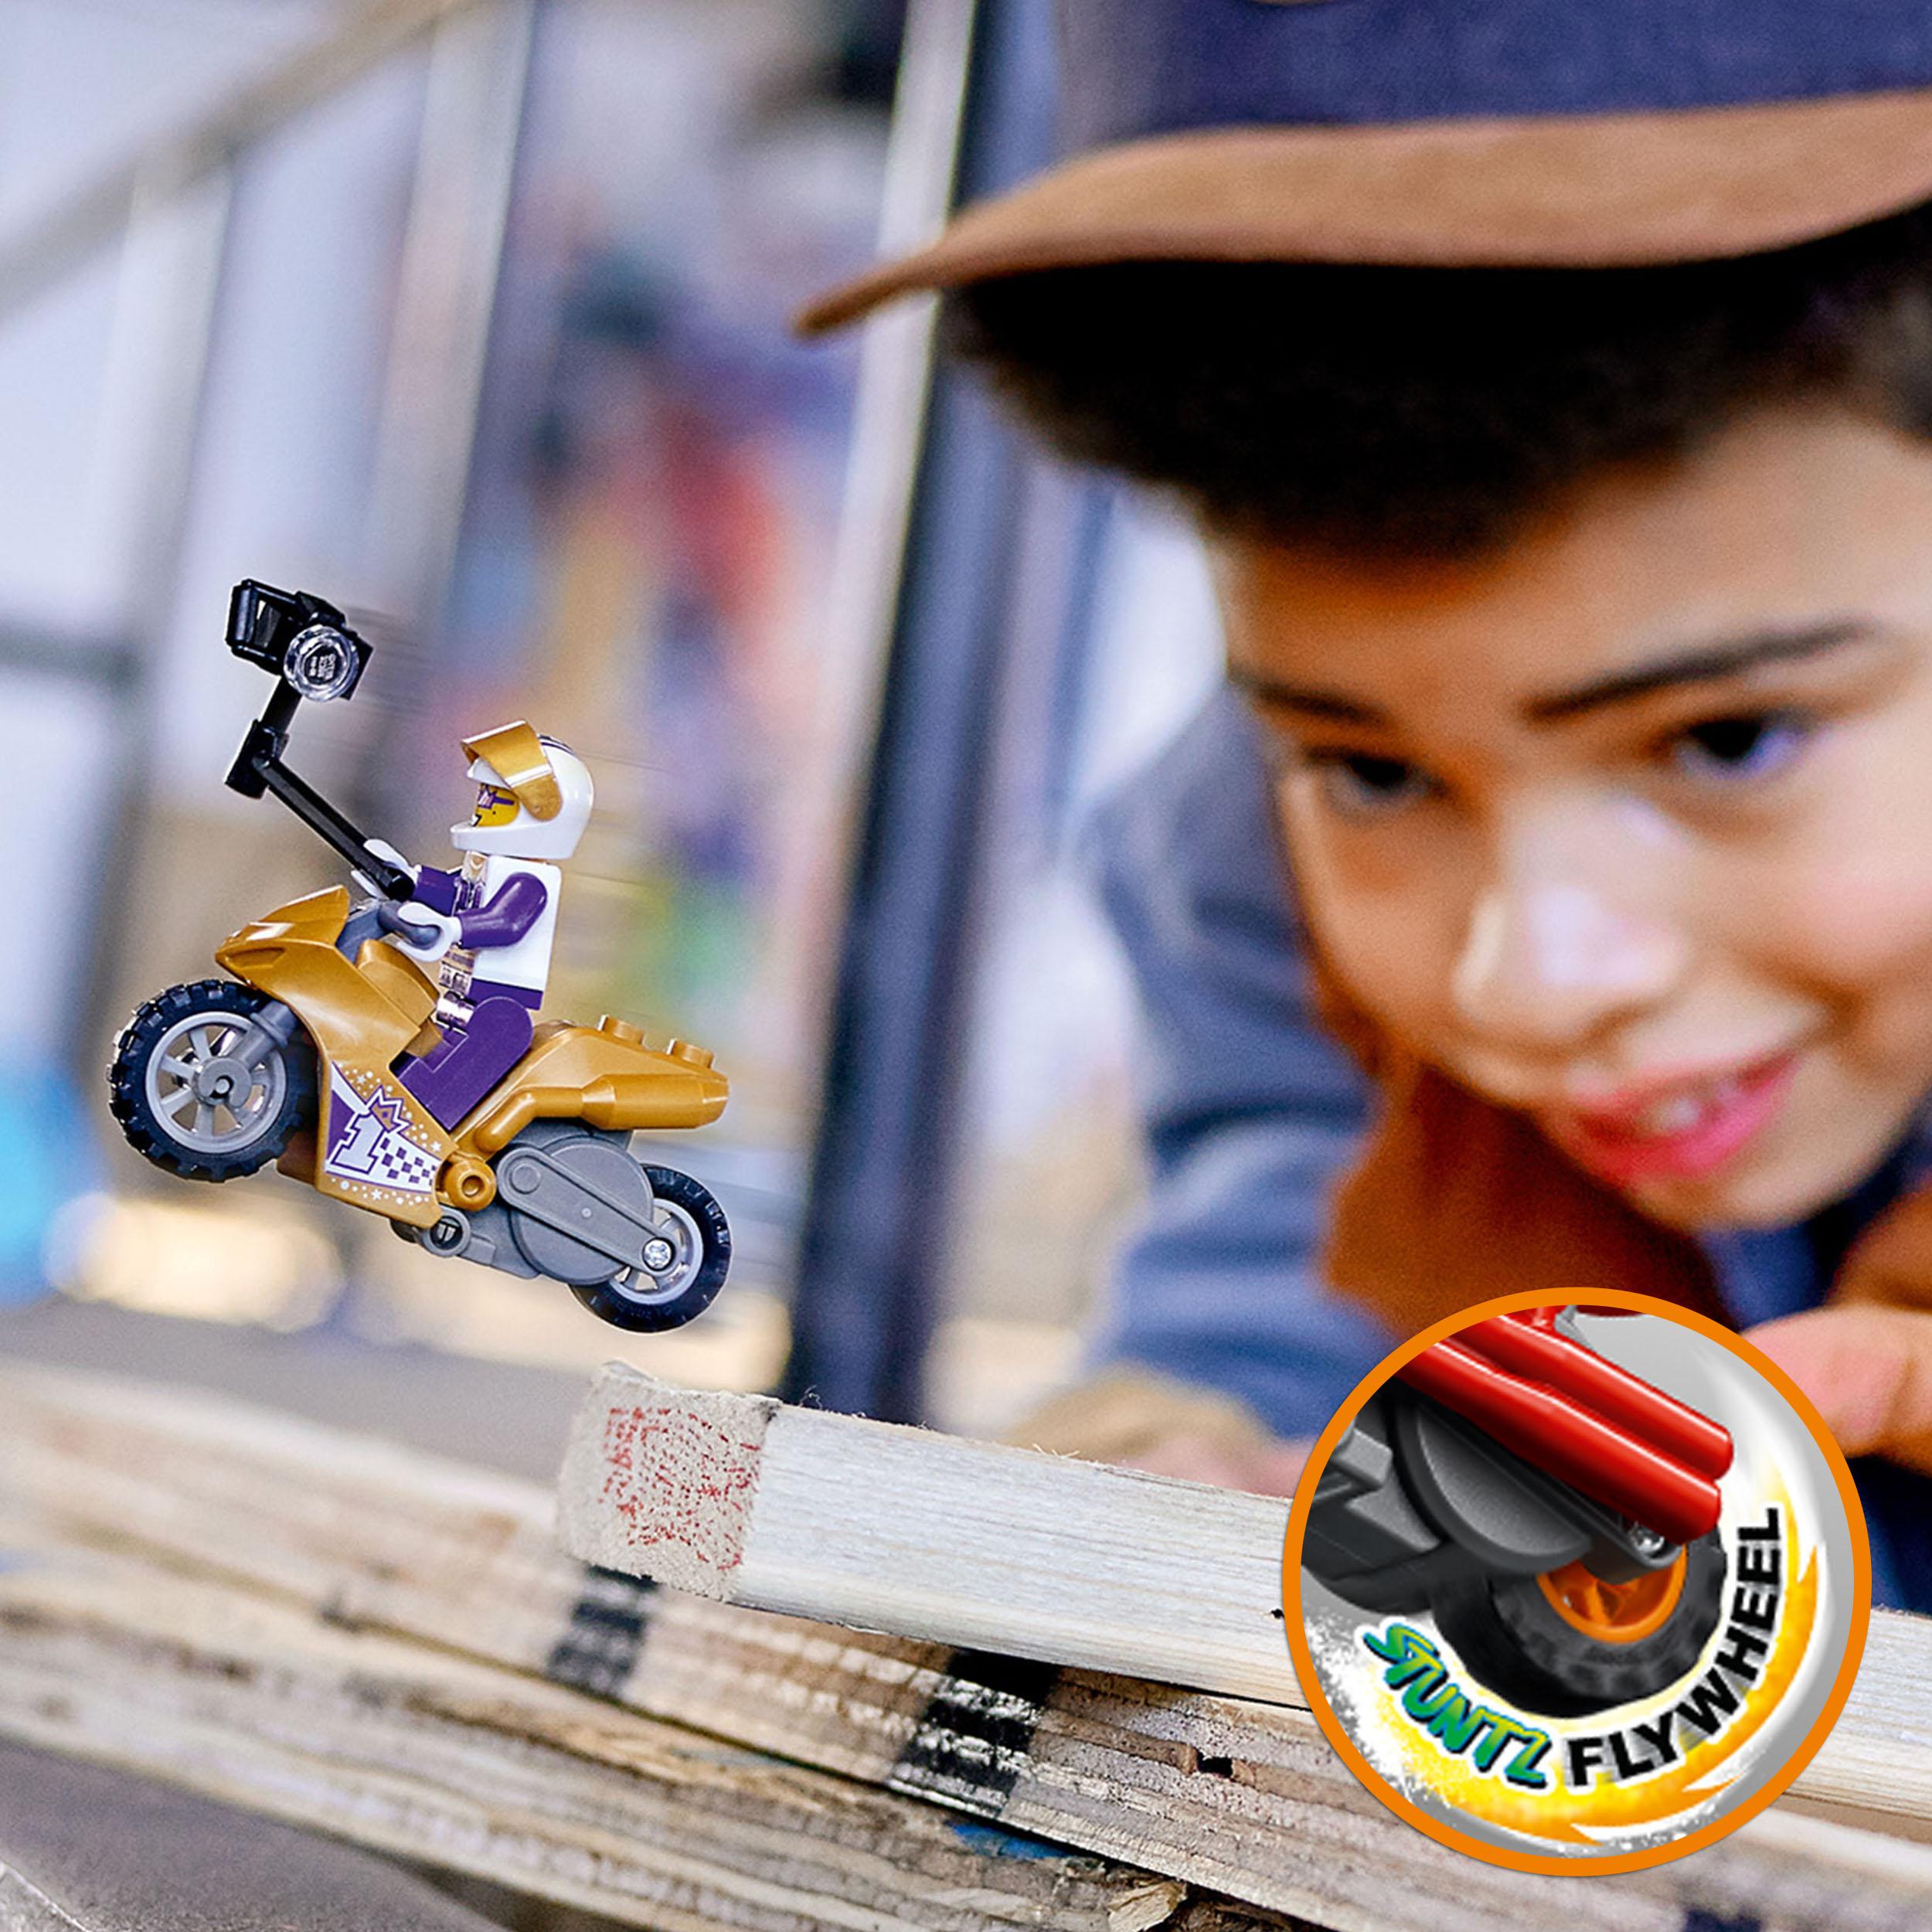 Lego city stuntz stunt bike dei selfie, moto giocattolo con funzione “carica e vai”, idea regalo per bambini dai 5 anni, 60309 - LEGO CITY, LEGO CITY STUNTZ, Lego